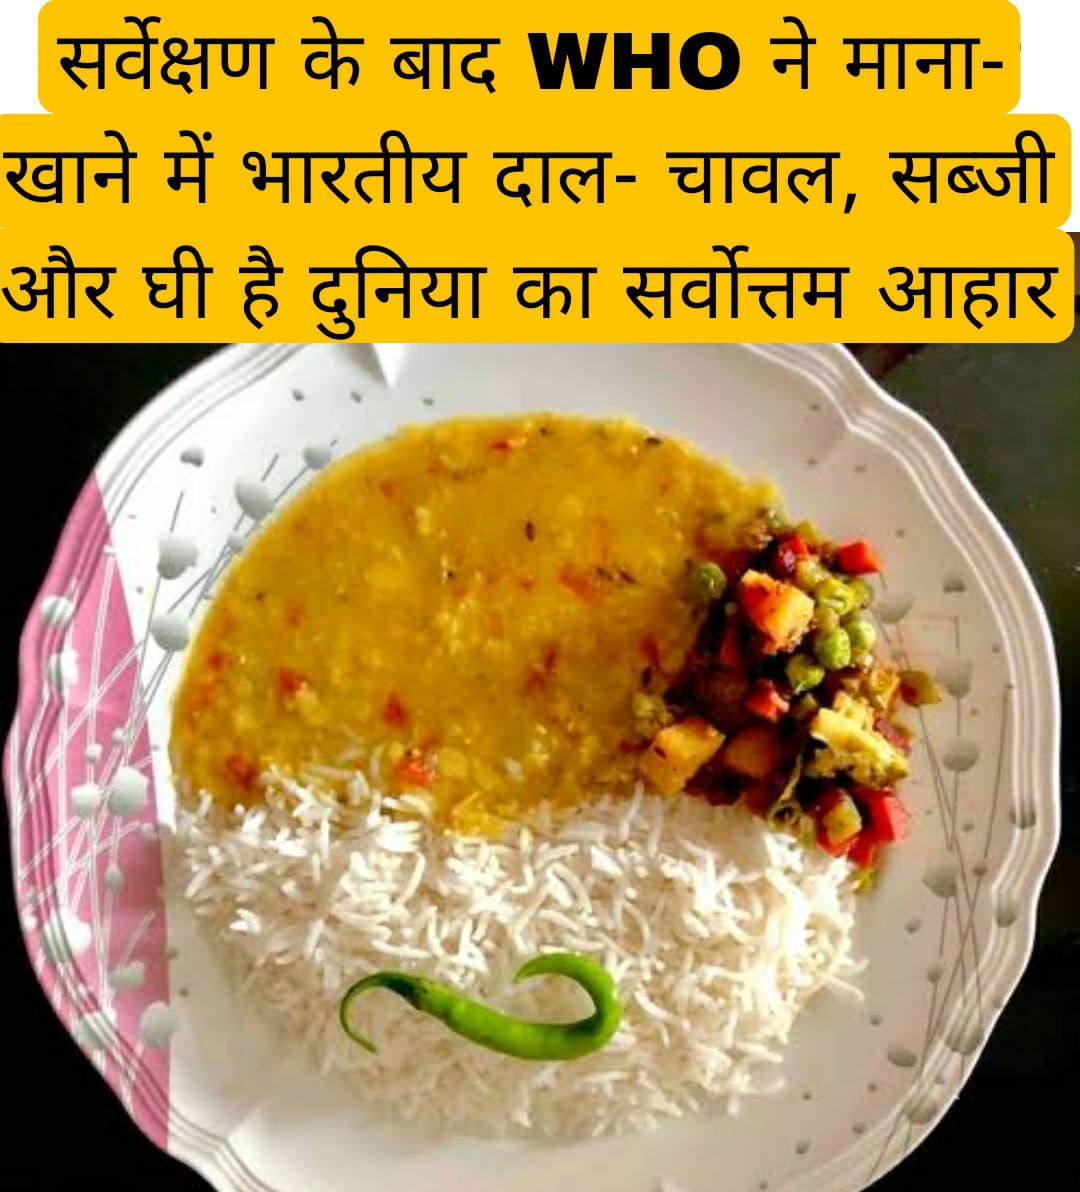 सर्वेक्षण के बाद WHO ने माना- खाने में भारतीय दाल-चावल, सब्जी और घी है दुनिया का सर्वोत्तम आहार